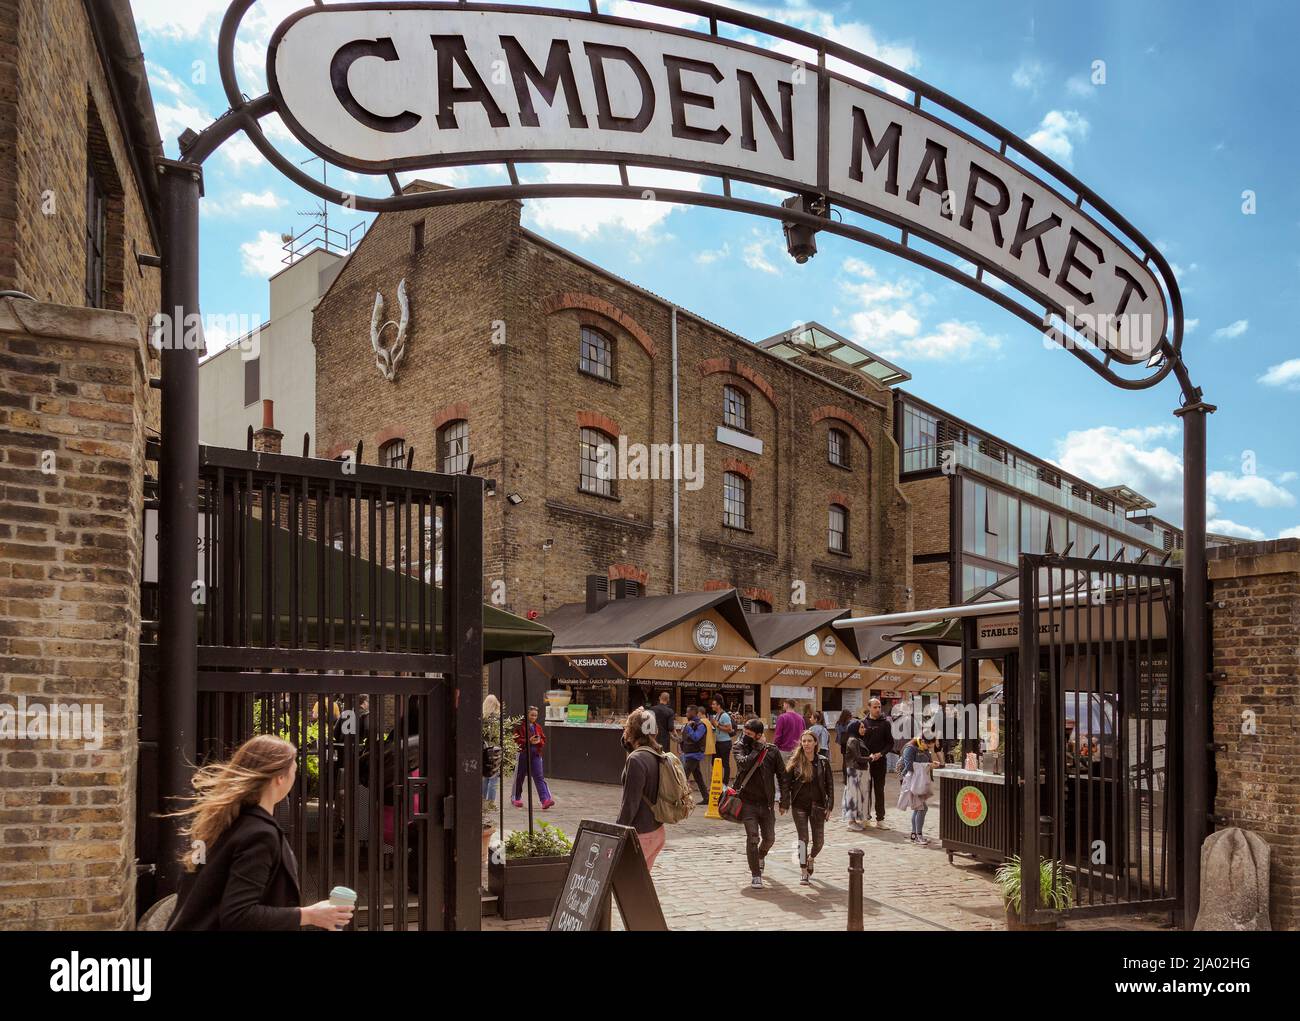 Le marché de Camden est une attraction populaire et une destination touristique. Il abrite plus de 1000 boutiques, stands, bars et cafés uniques. Banque D'Images